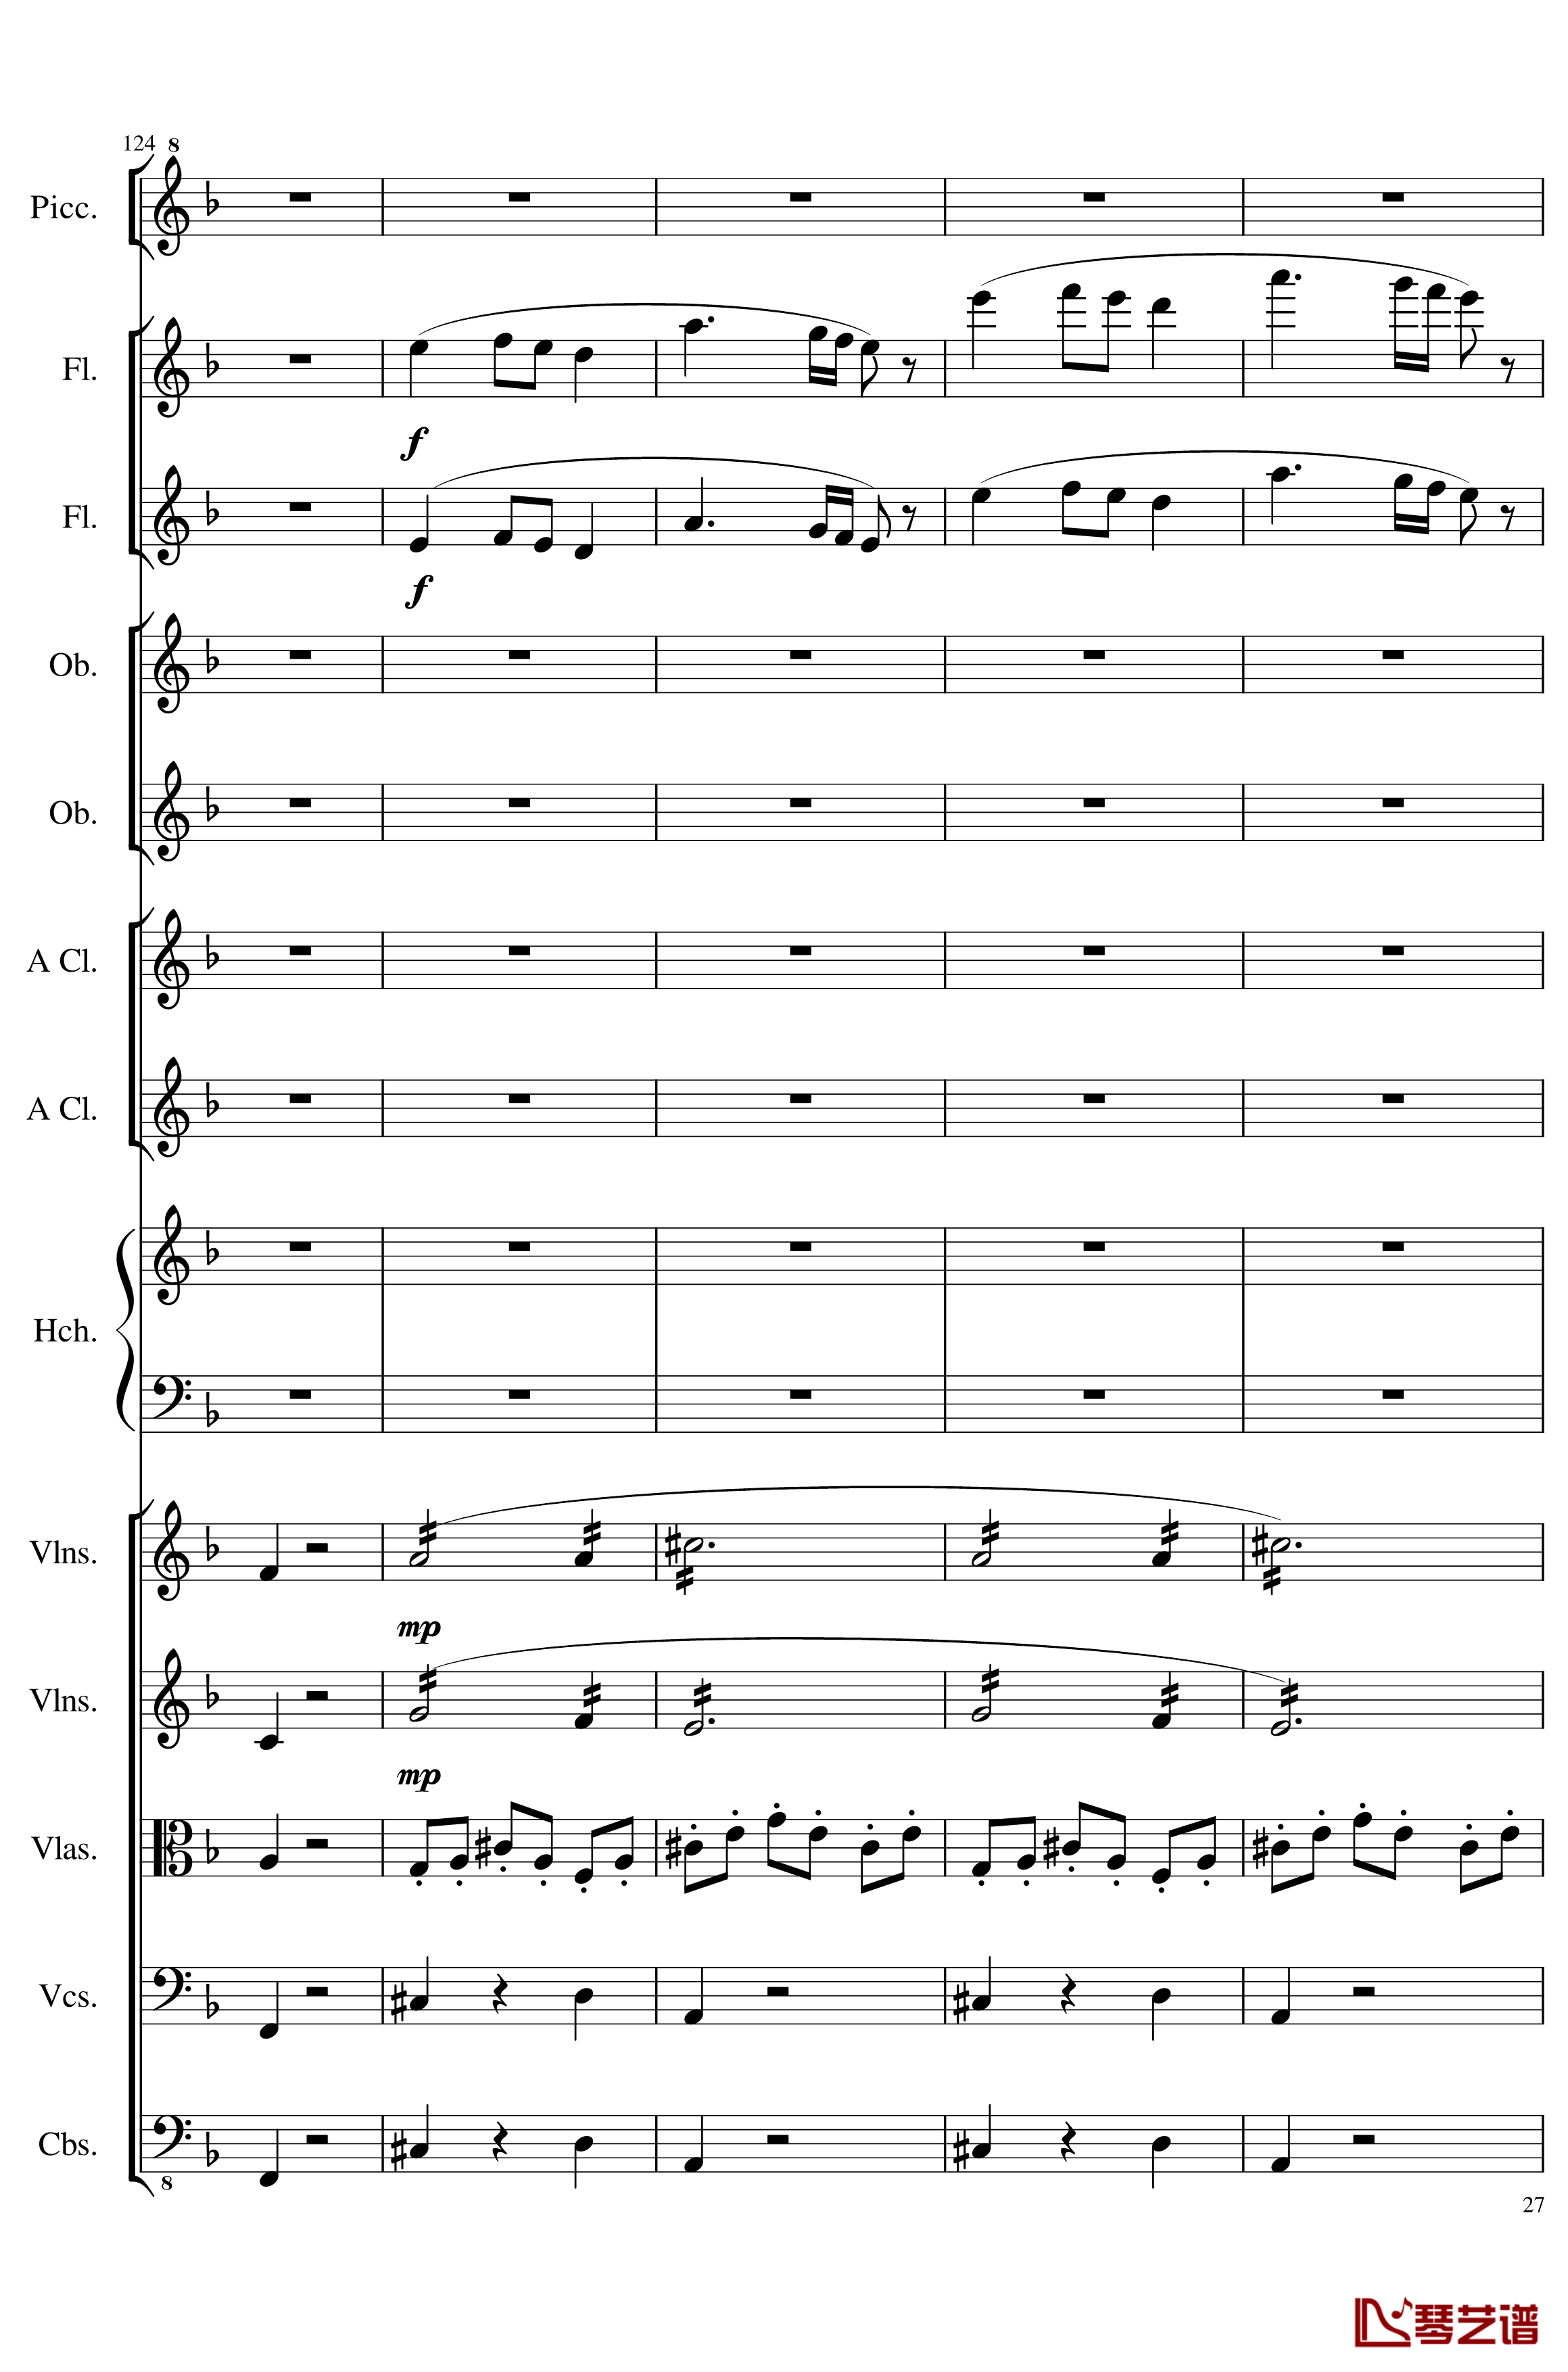 7 Contredanses No.1-7, Op.124钢琴谱-7首乡村舞曲，第一至第七，作品124-一个球27